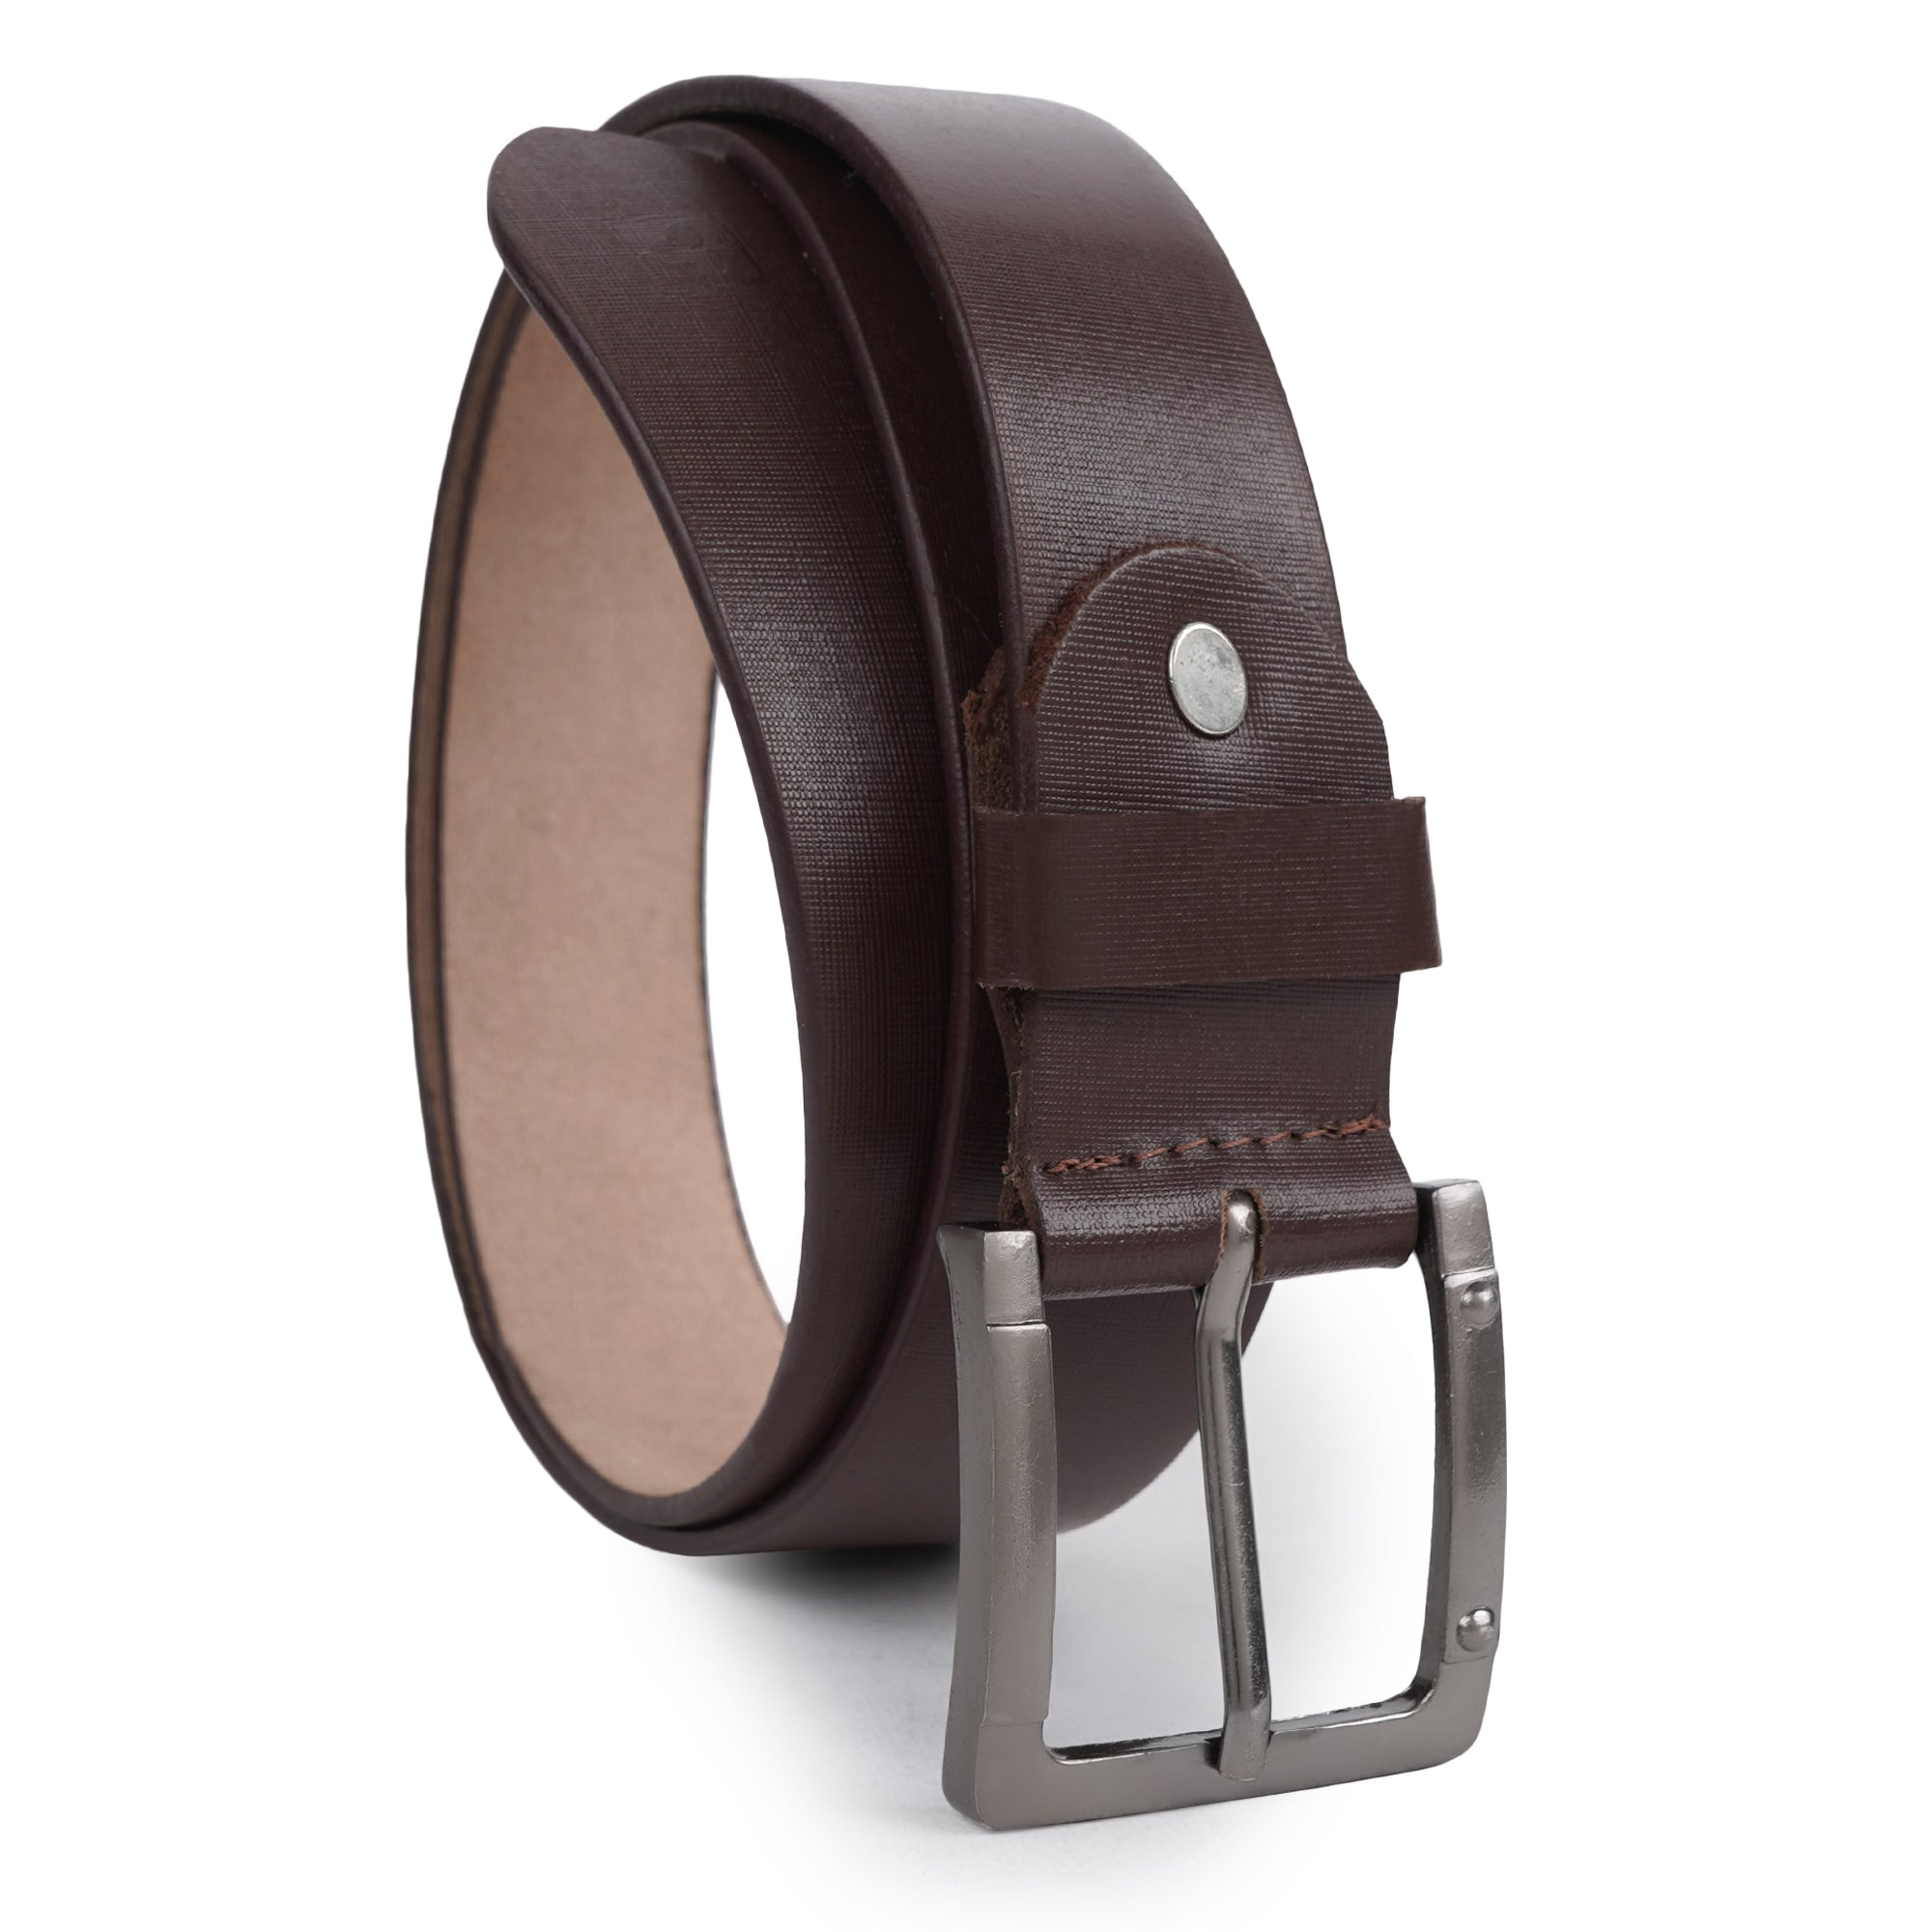 CIMONI Formal Classy Genuine Leather Trendy Belt For Men